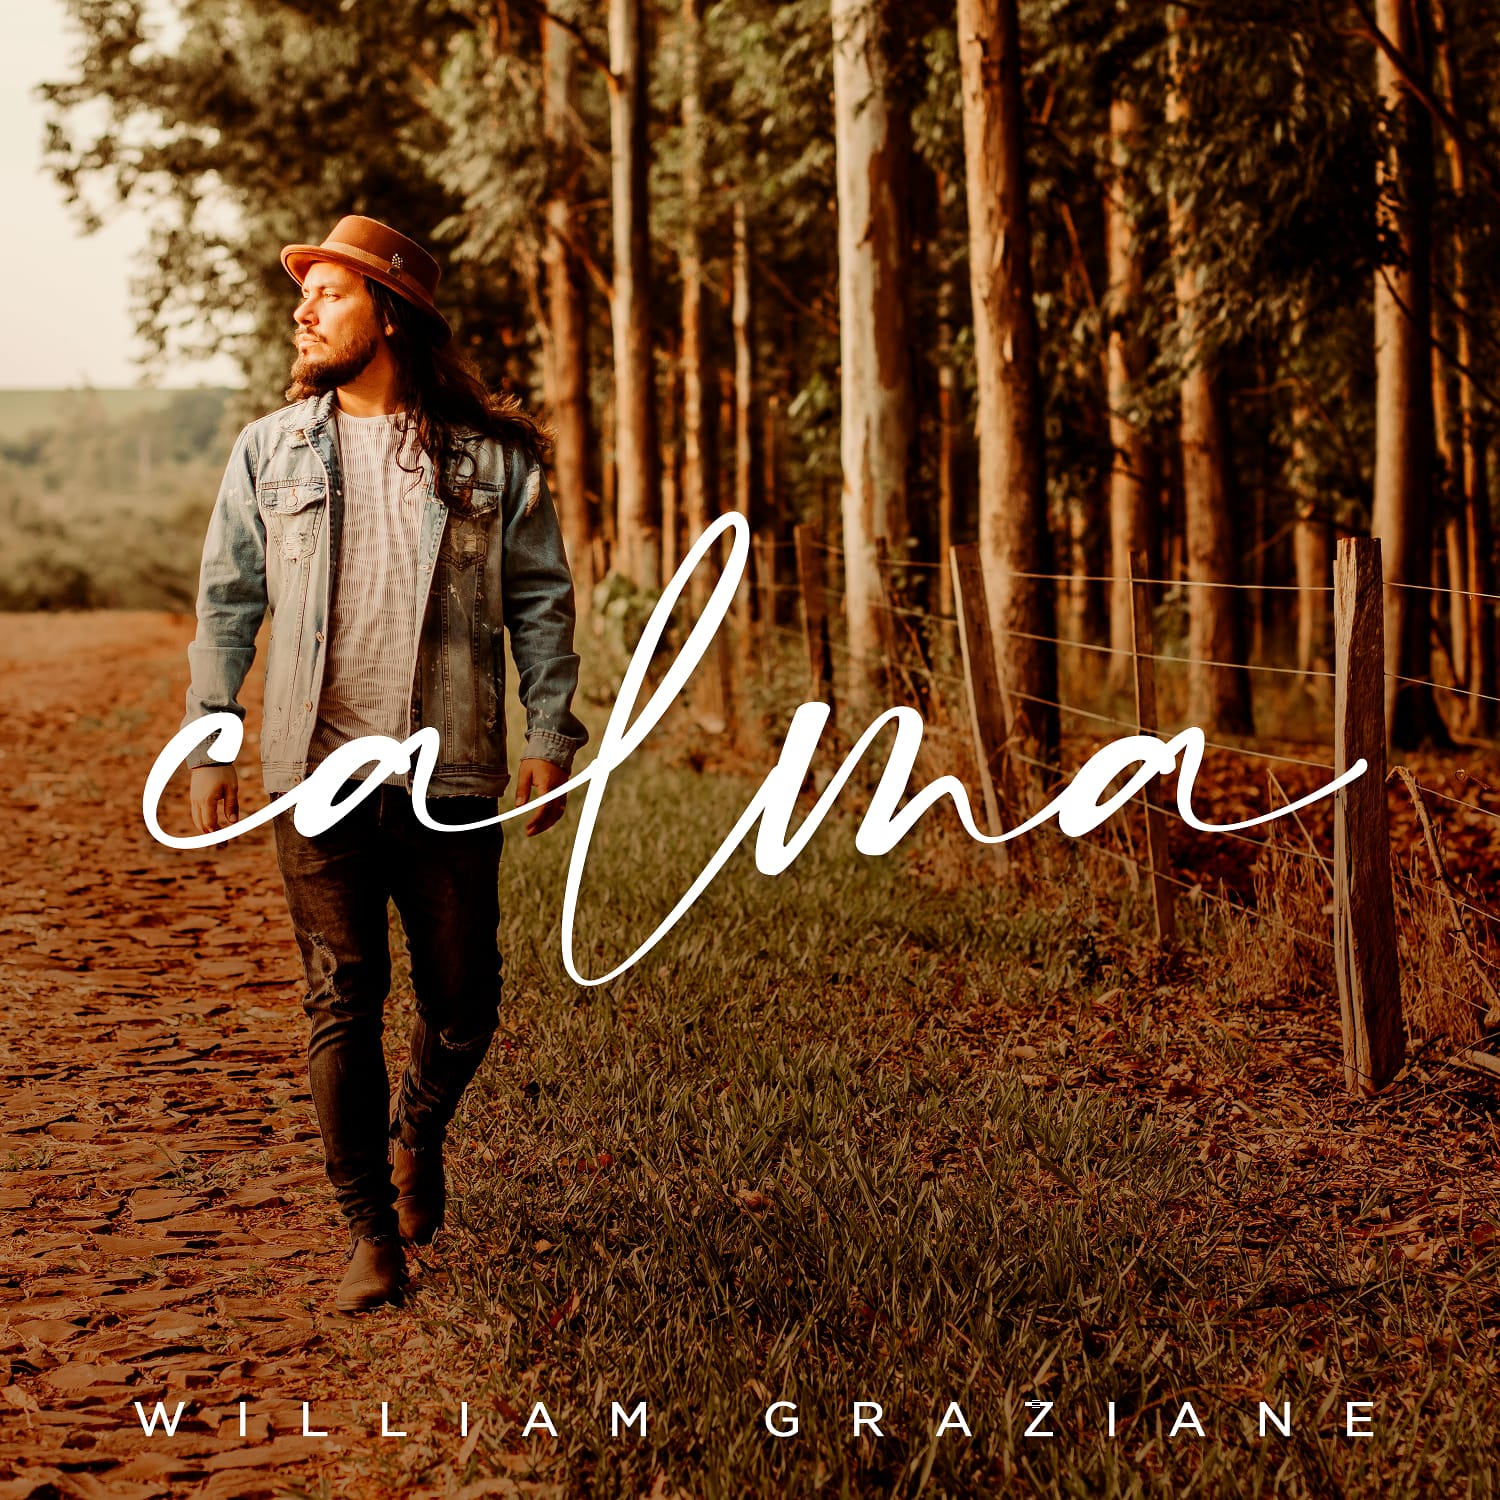 William Graziane lança o single “Calma”, baseado em uma experiência real